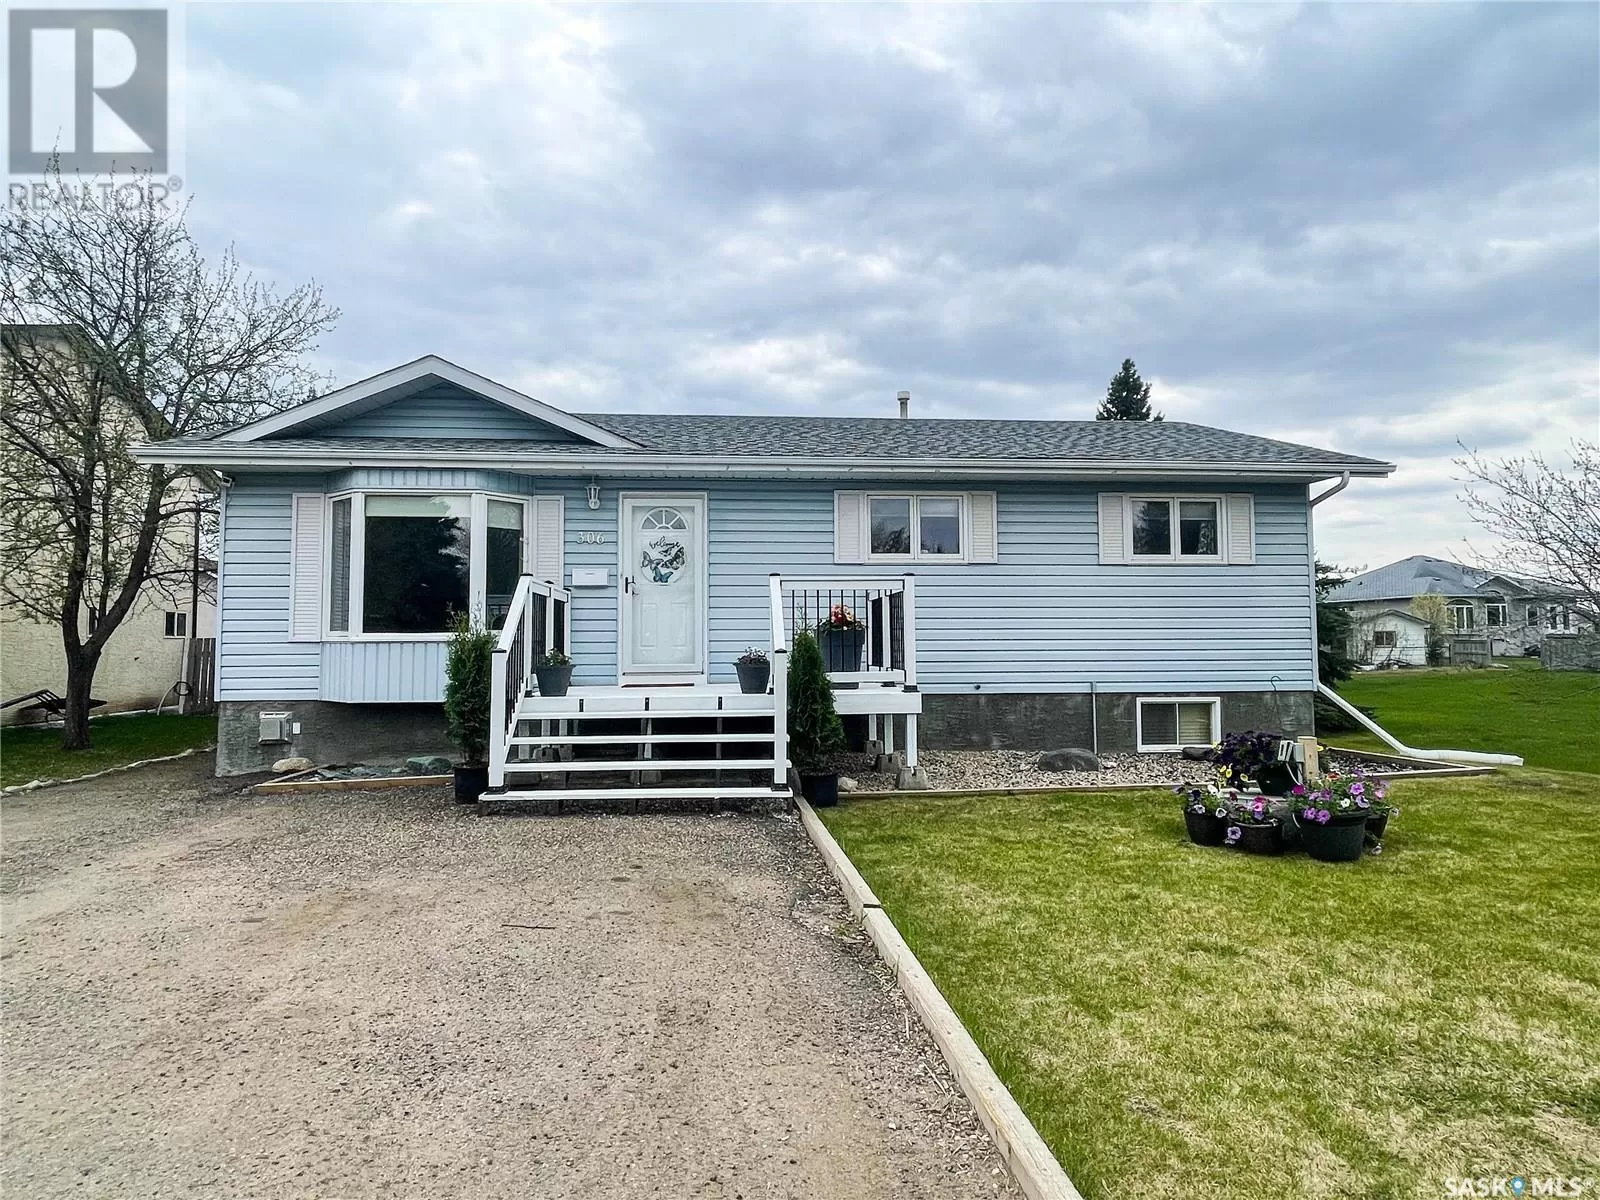 House for rent: 306 Woodman Avenue, Meadow Lake, Saskatchewan S9X 1H3